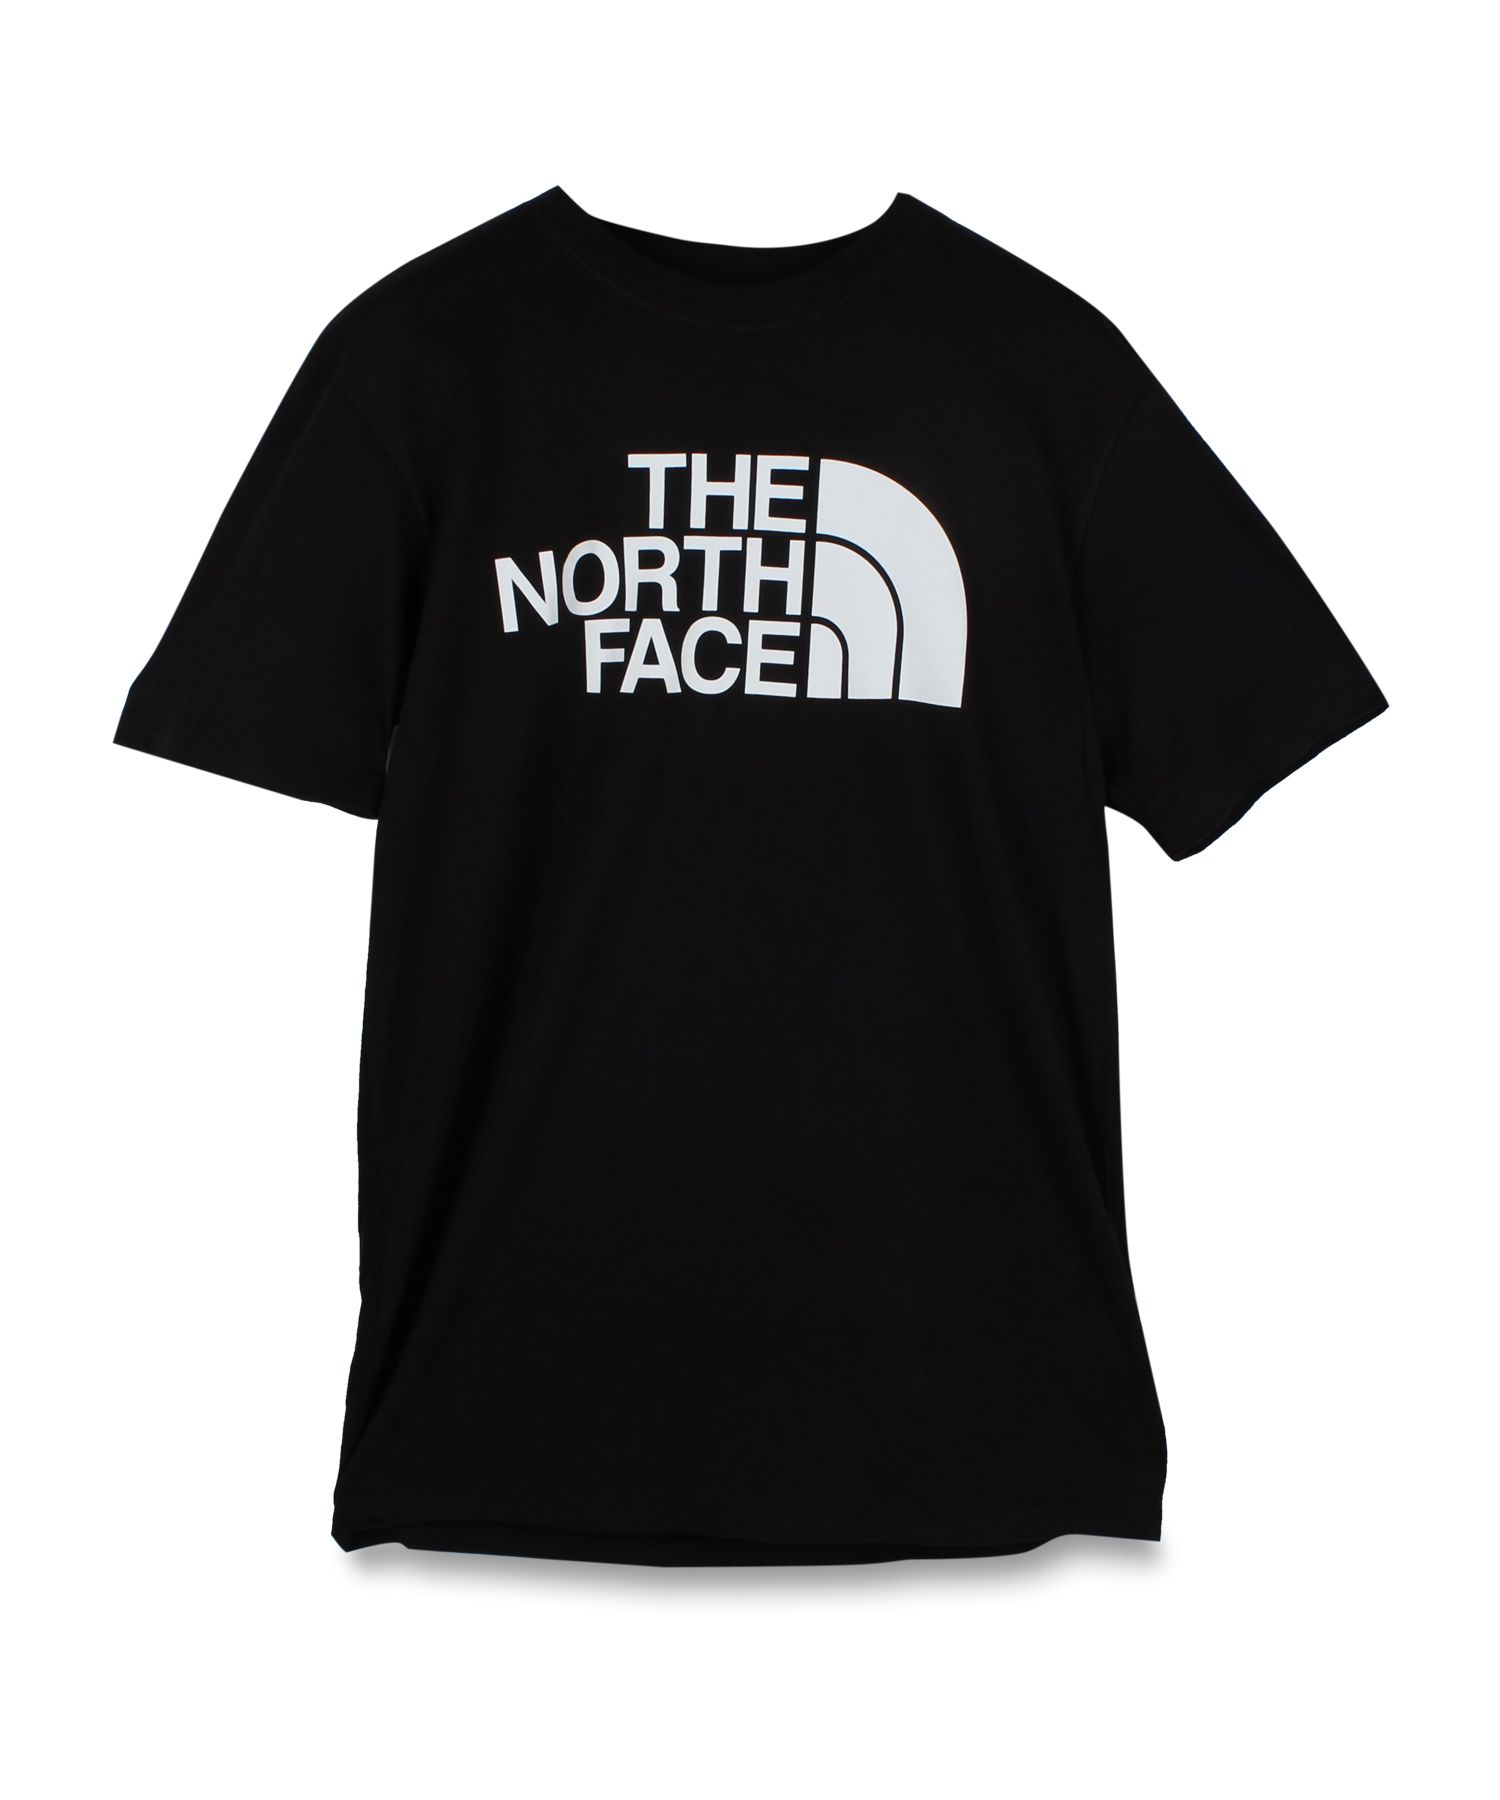 ノースフェイス THE NORTH FACE Tシャツ 半袖 メンズ レディース ハーフドーム HALF DOME SS TEE ブラック ホワイト  黒 白 N